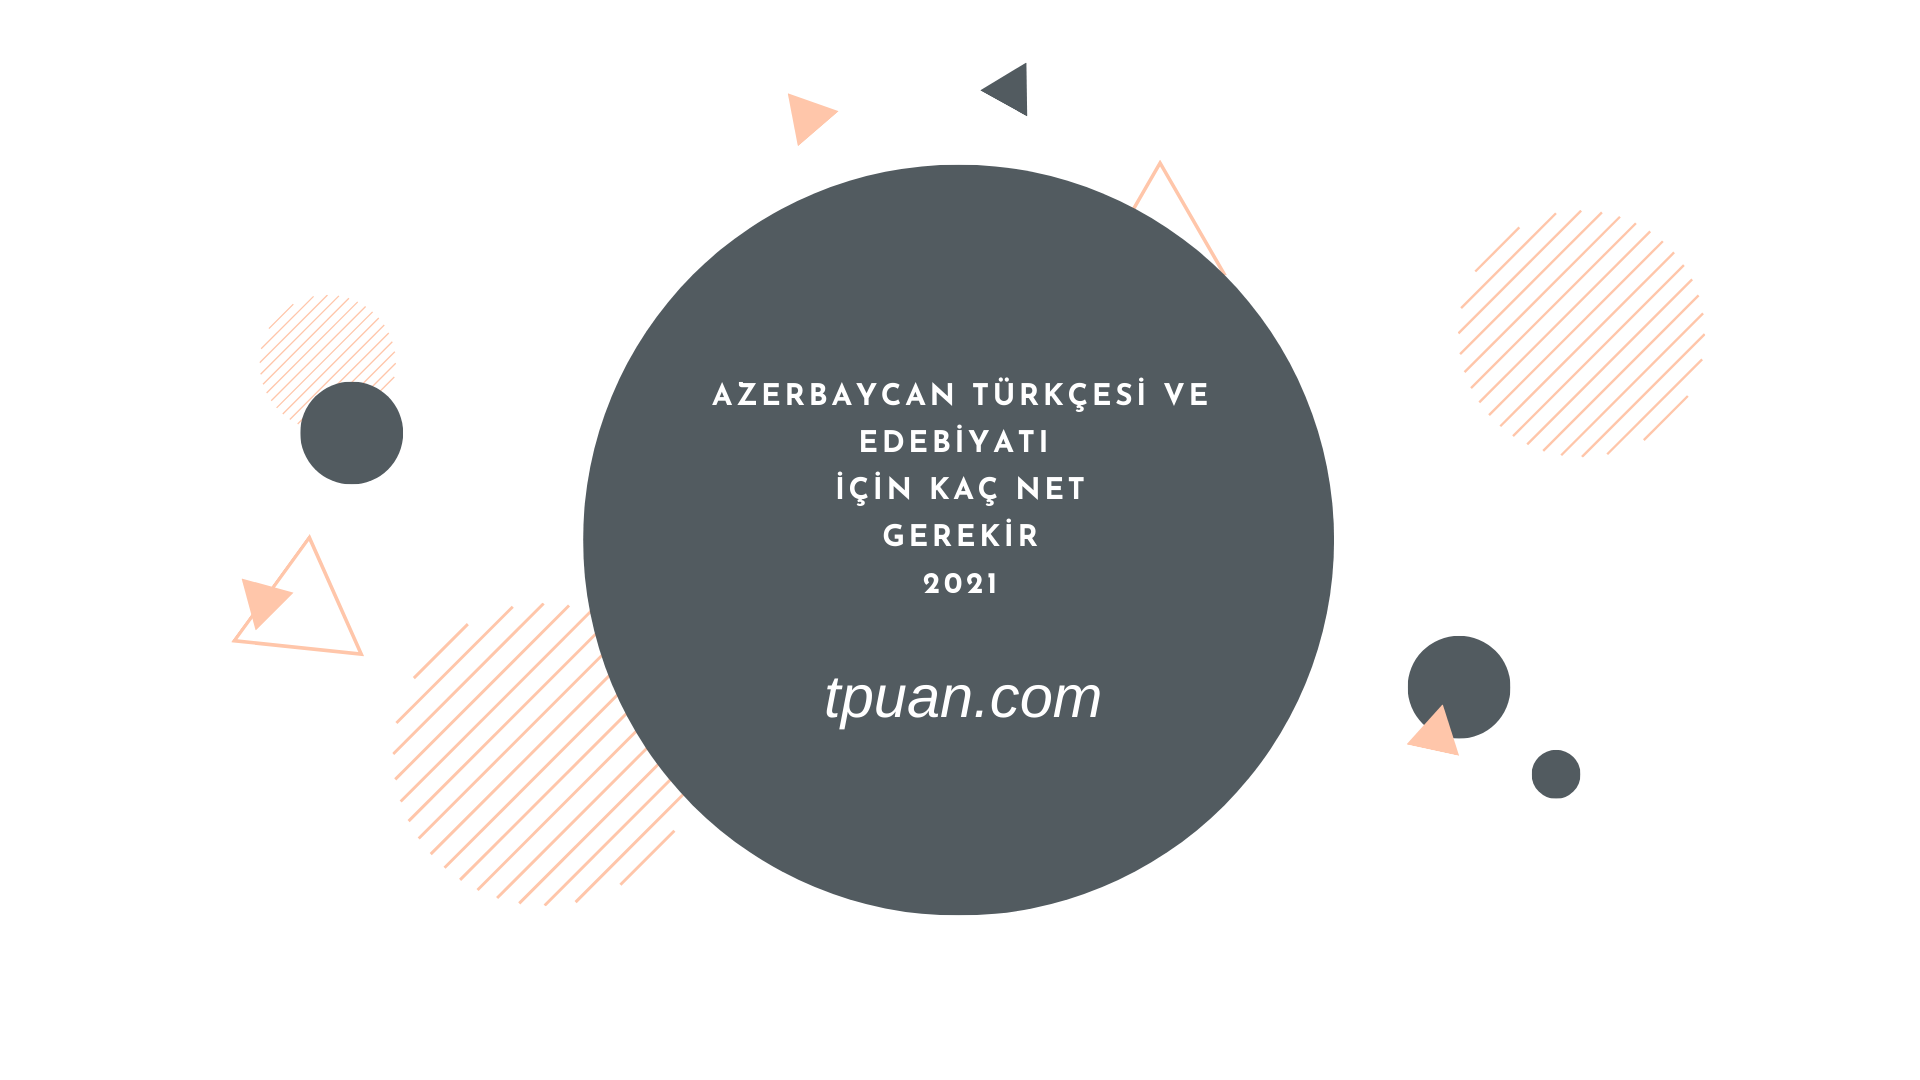 Azerbaycan Türkçesi ve Edebiyatı İçin Kaç Net Gerekiyor 2021